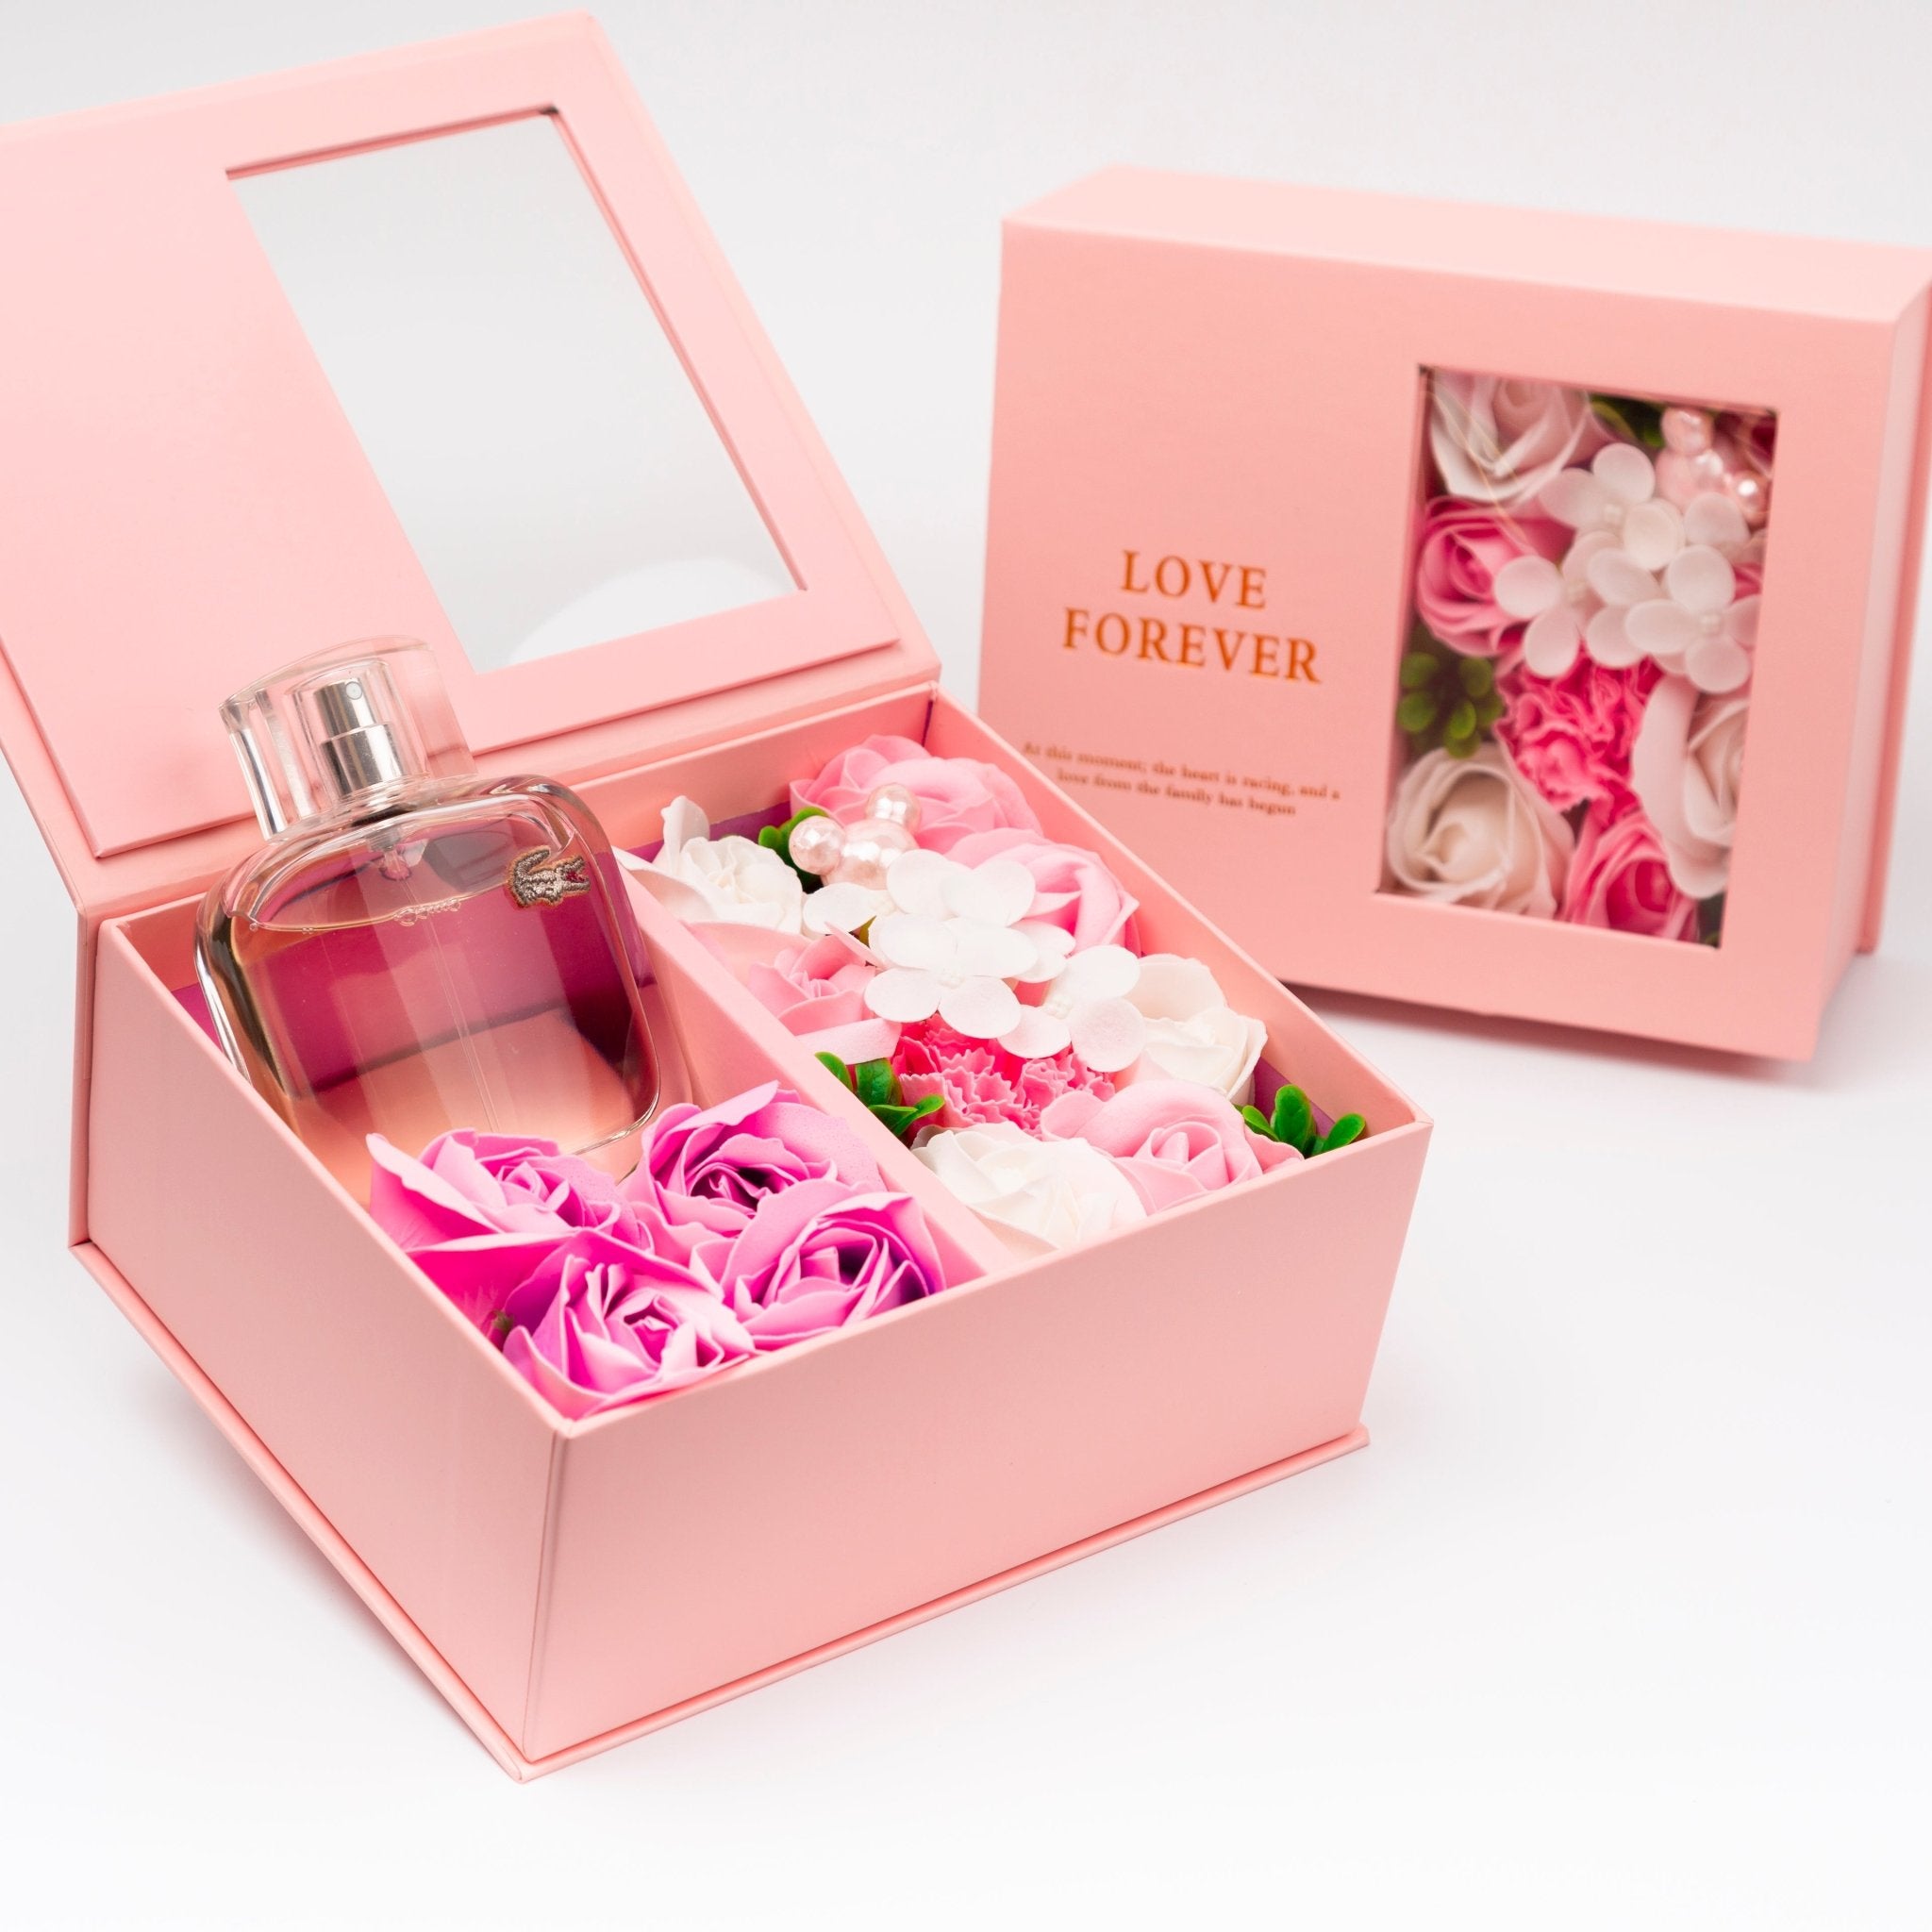 Flower Box - Perfume Gift For Women 29 - #shoFlower Box - Perfume Gift For Women 29p_name#Flower Box - Perfume Gift For Women 29Gift Boxes & TinsTakreemTakreem.joWomenPerfumeFlower Box - Perfume Gift For Women 29 - Takreem.jo